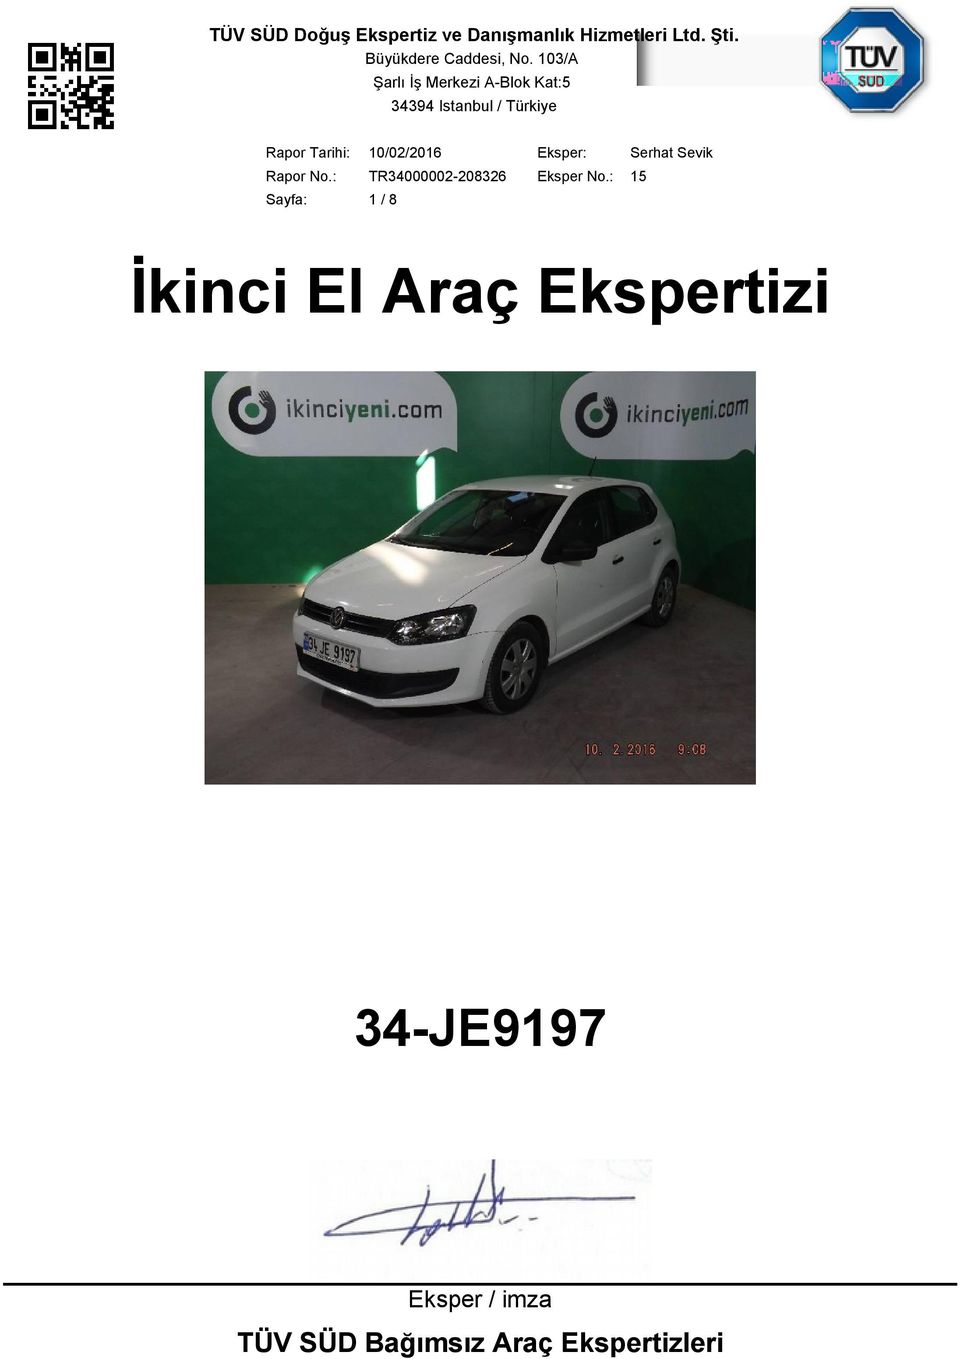 34-JE9197 Eksper / imza